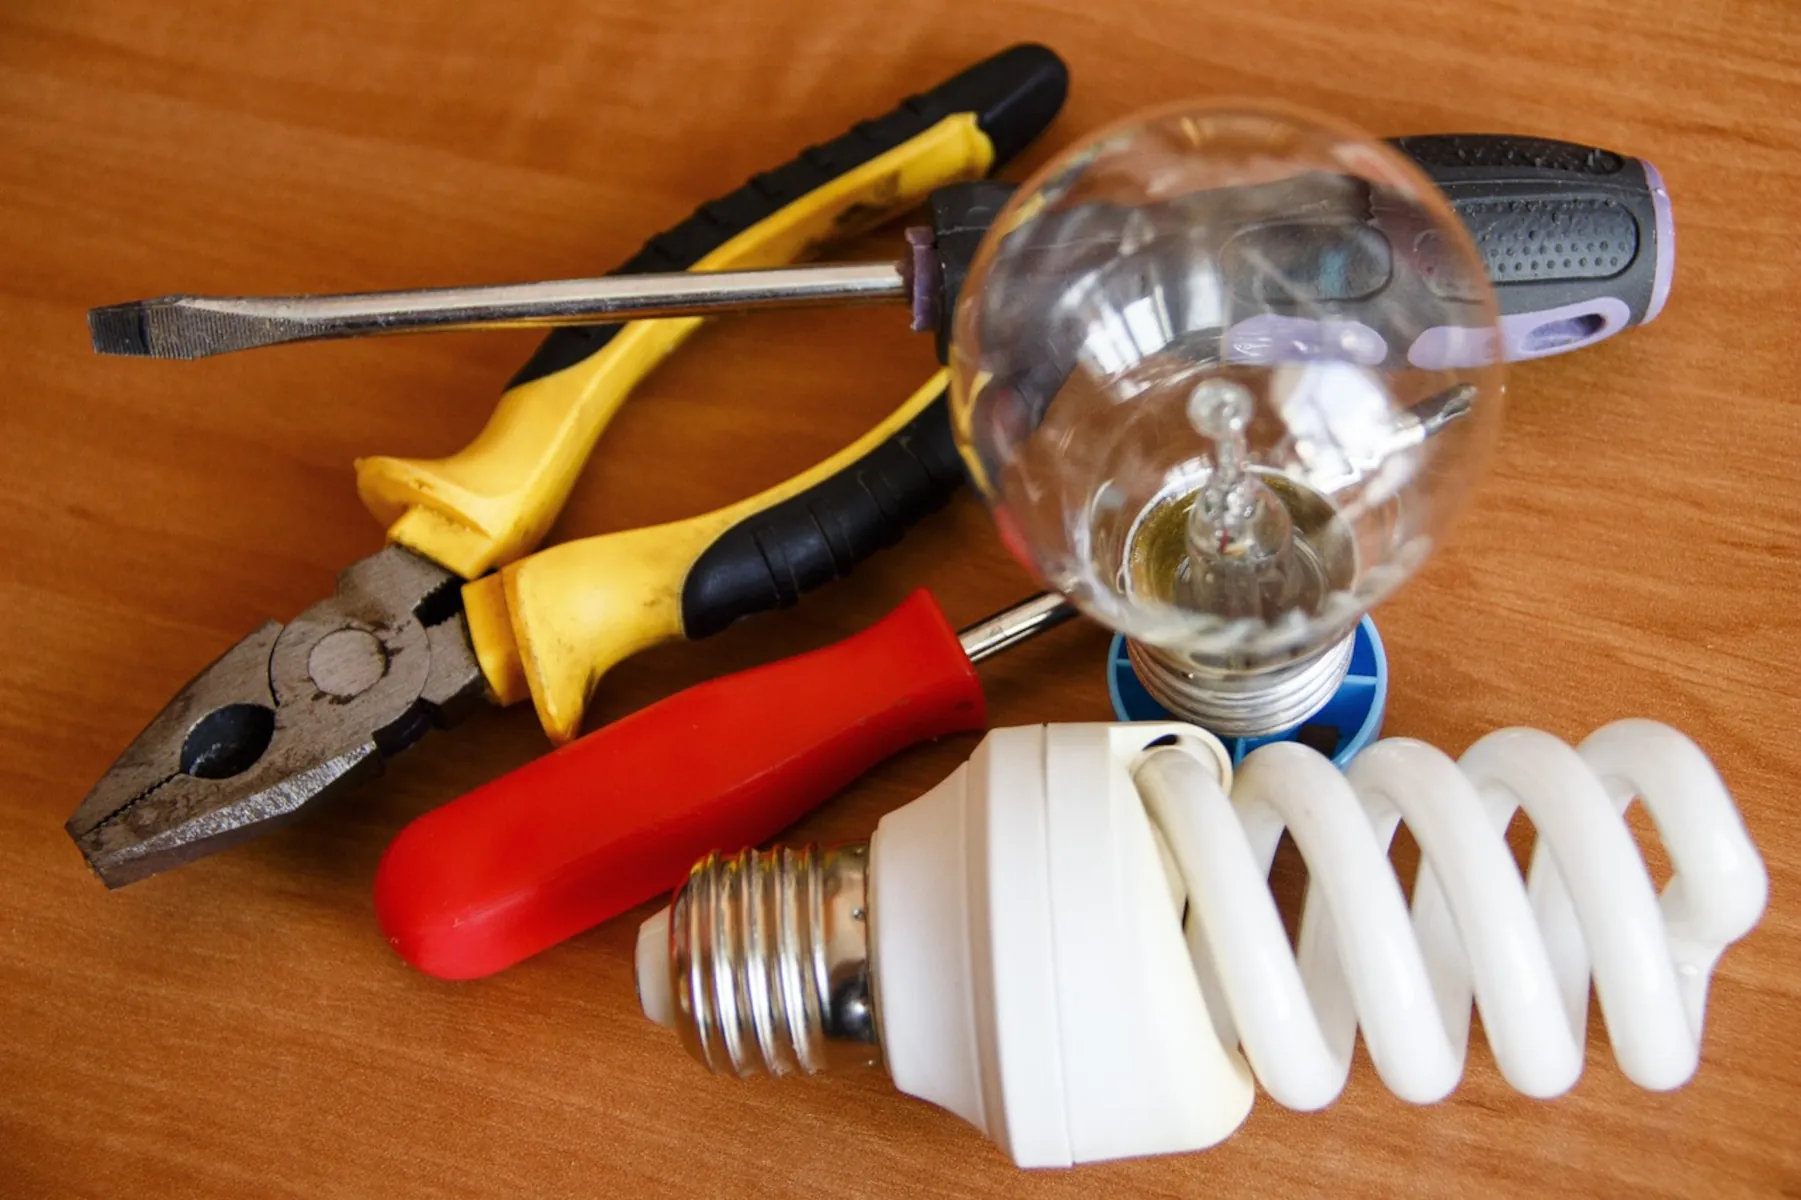 Világítási hibák javítása: Tippek a gyakori világítási problémák diagnosztizálásához és javításához